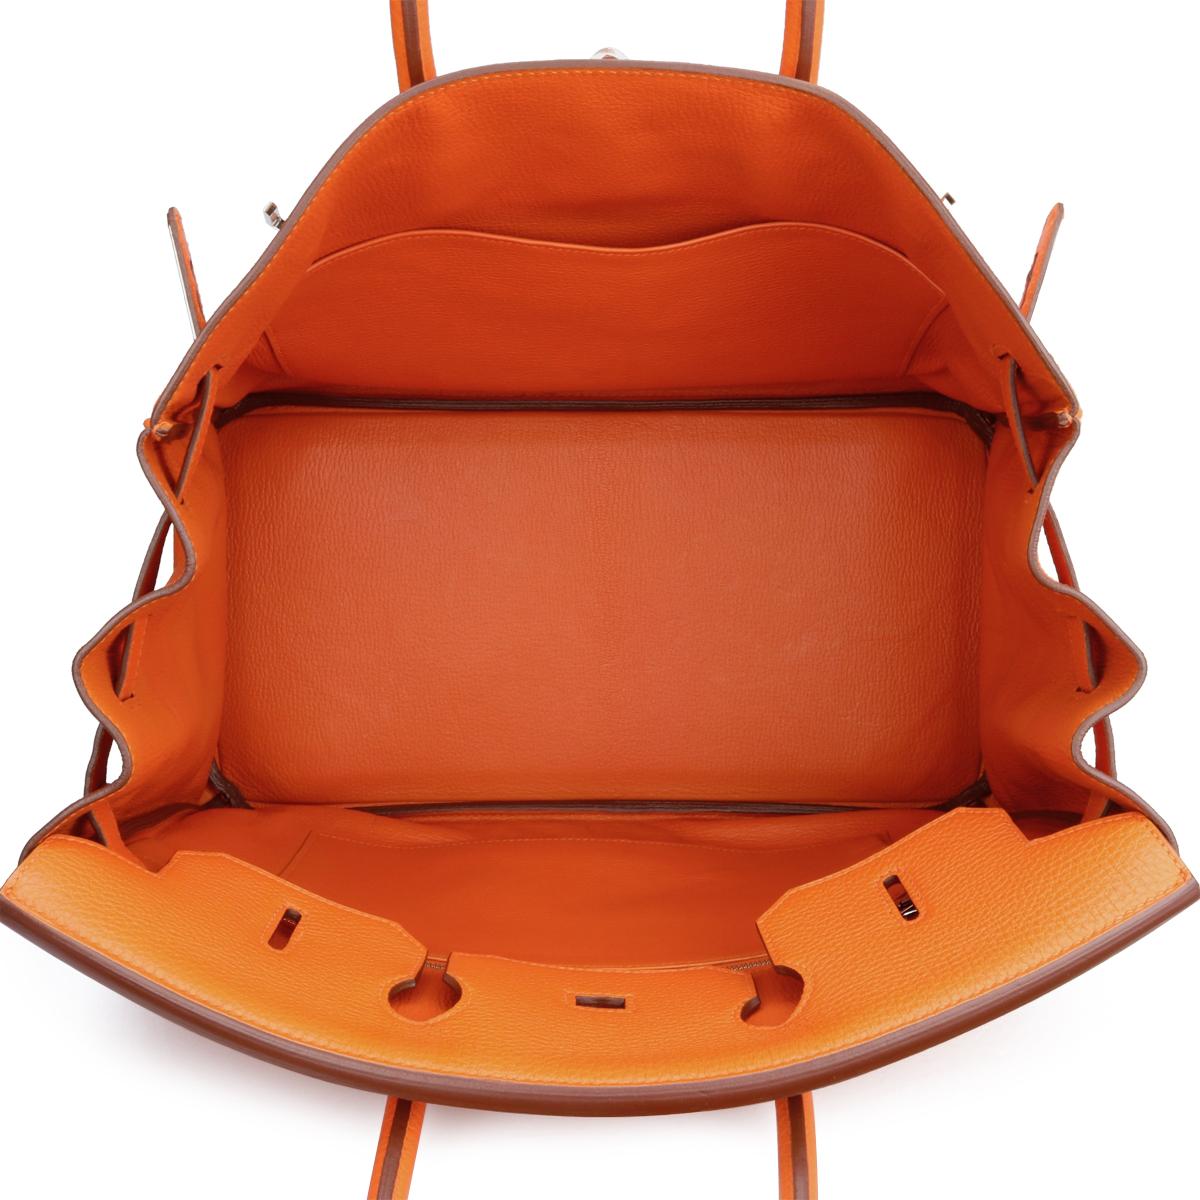 Hermès Birkin Bag 35cm Orange Togo Leather with Palladium Hardware Stamp N 2010 8